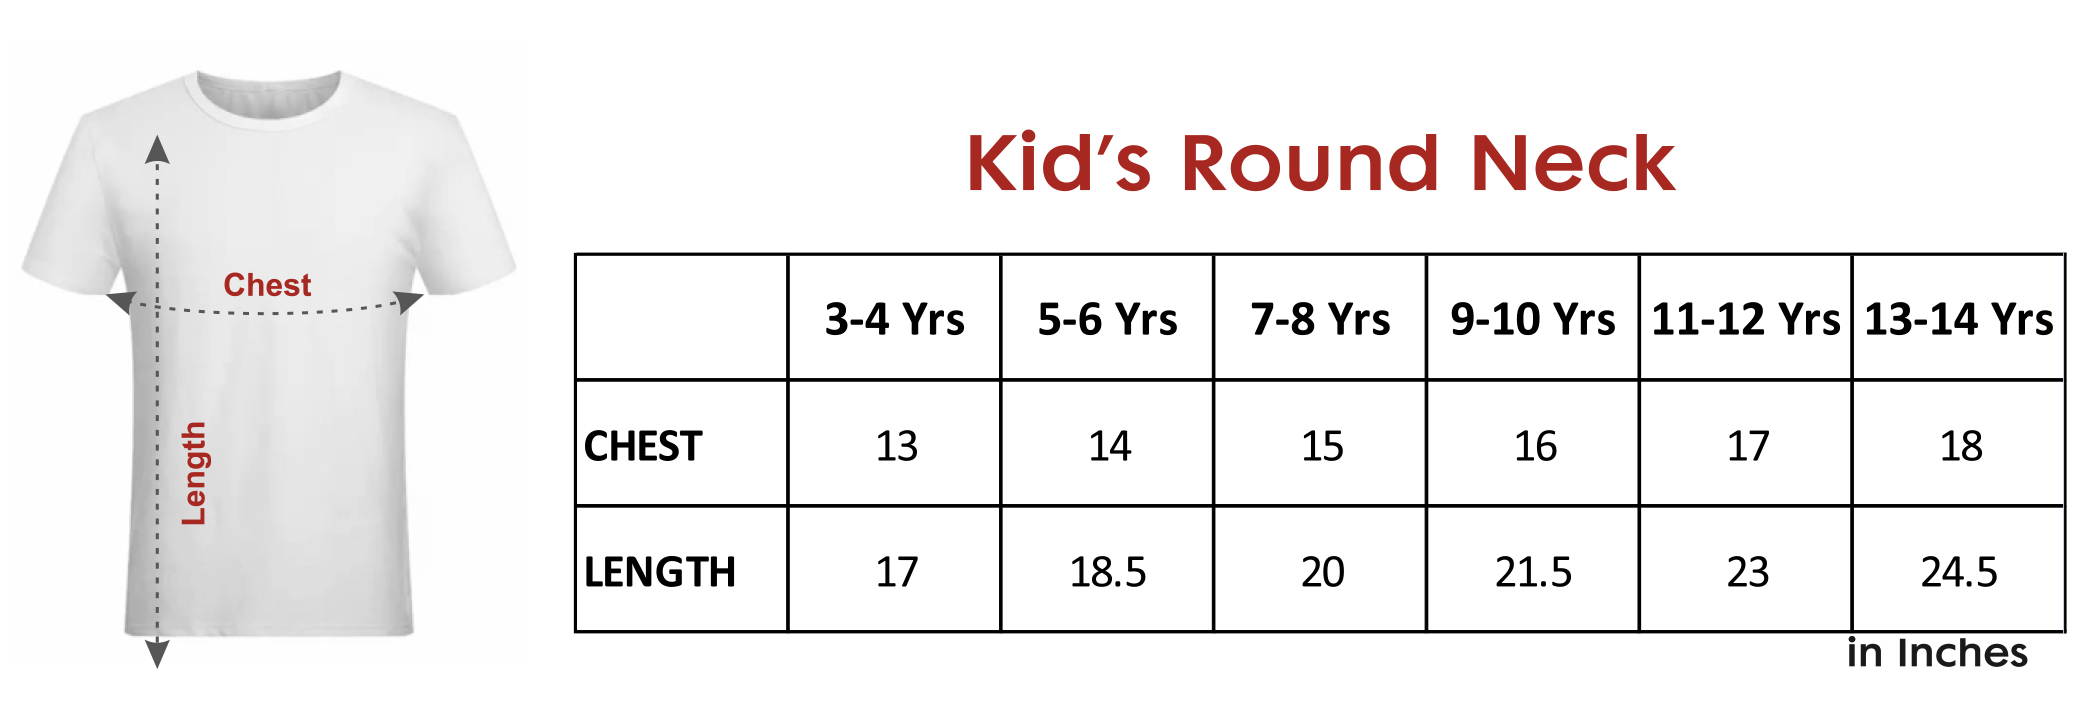 kids-round-neck- tshirt-size-chart